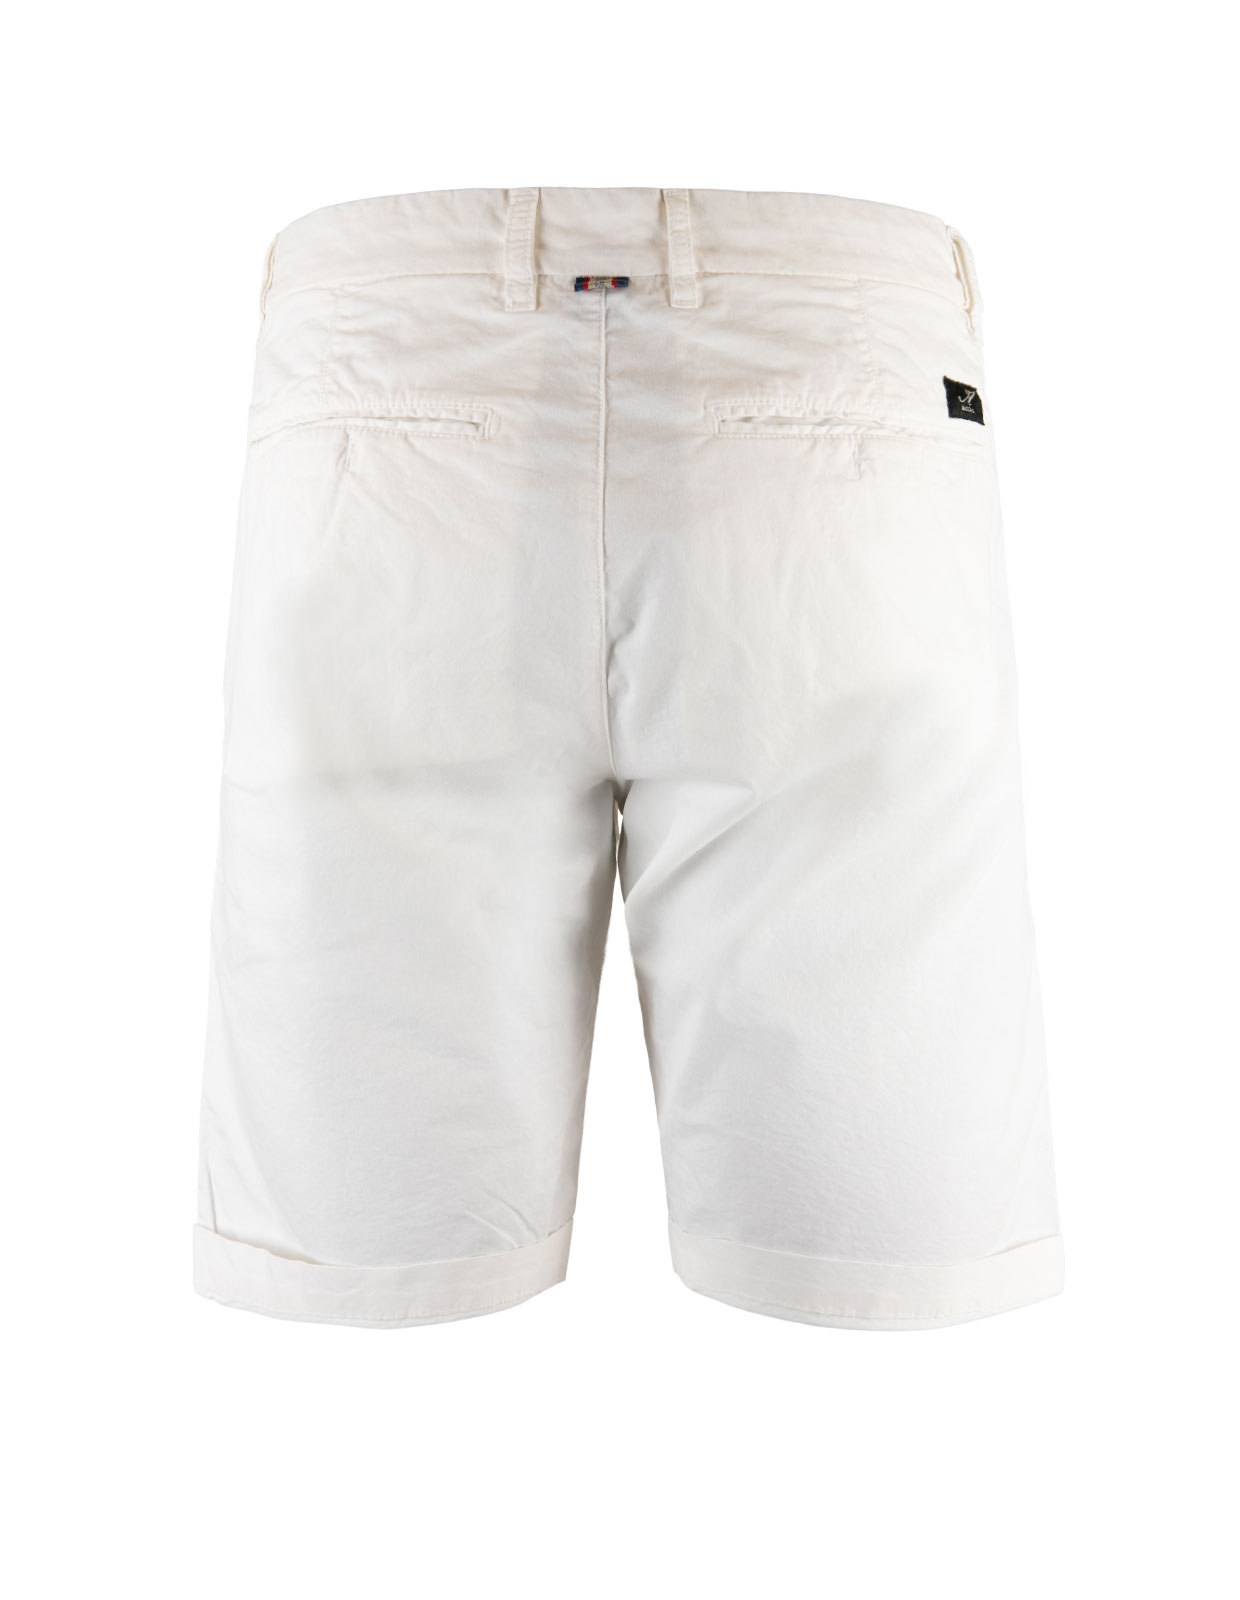 London Shorts Cotton Stretch White